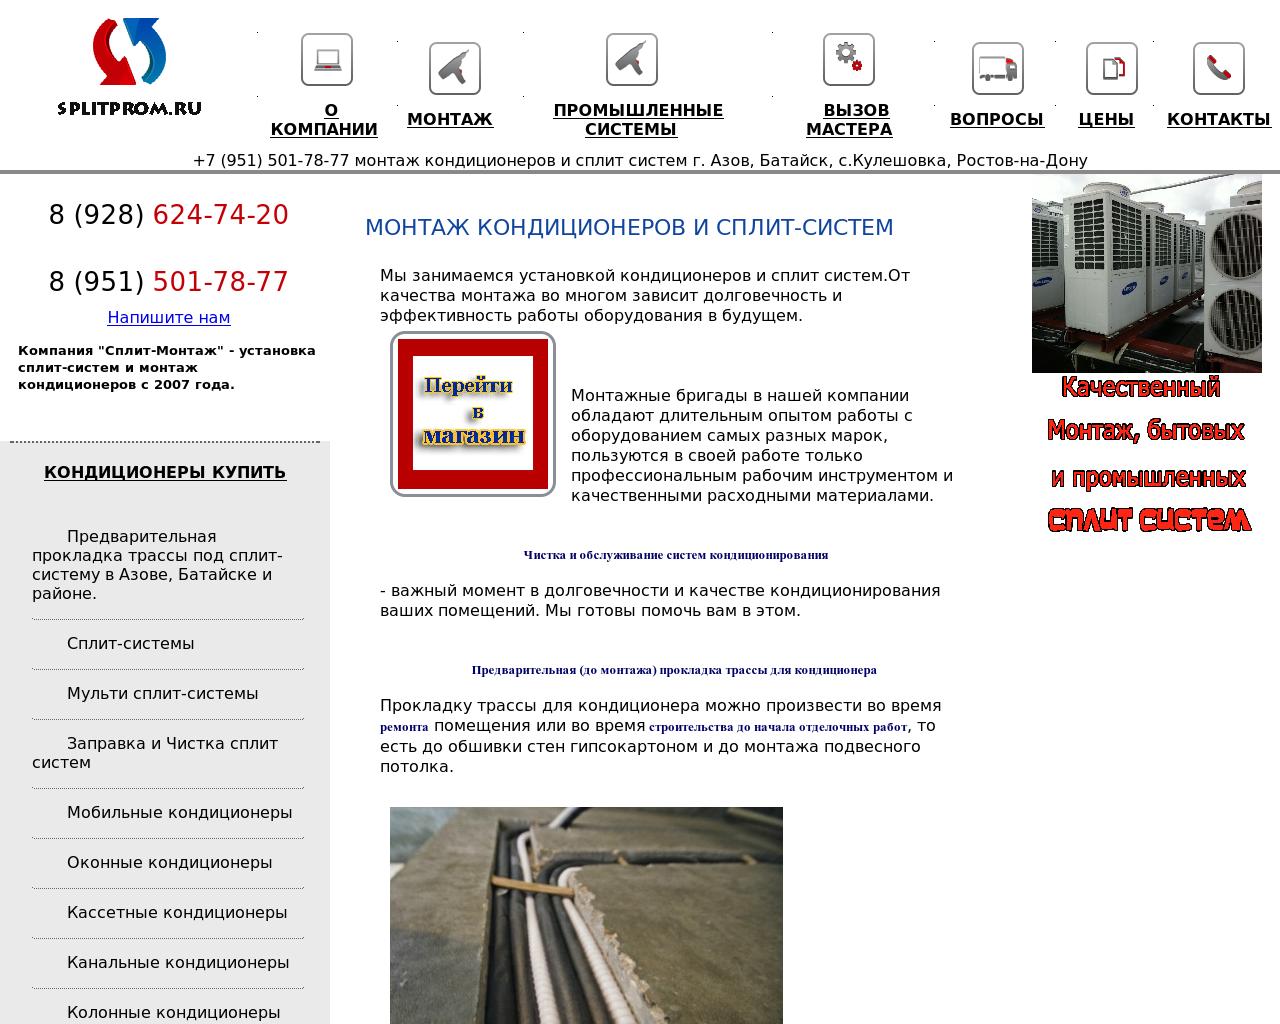 Изображение сайта splitprom.ru в разрешении 1280x1024